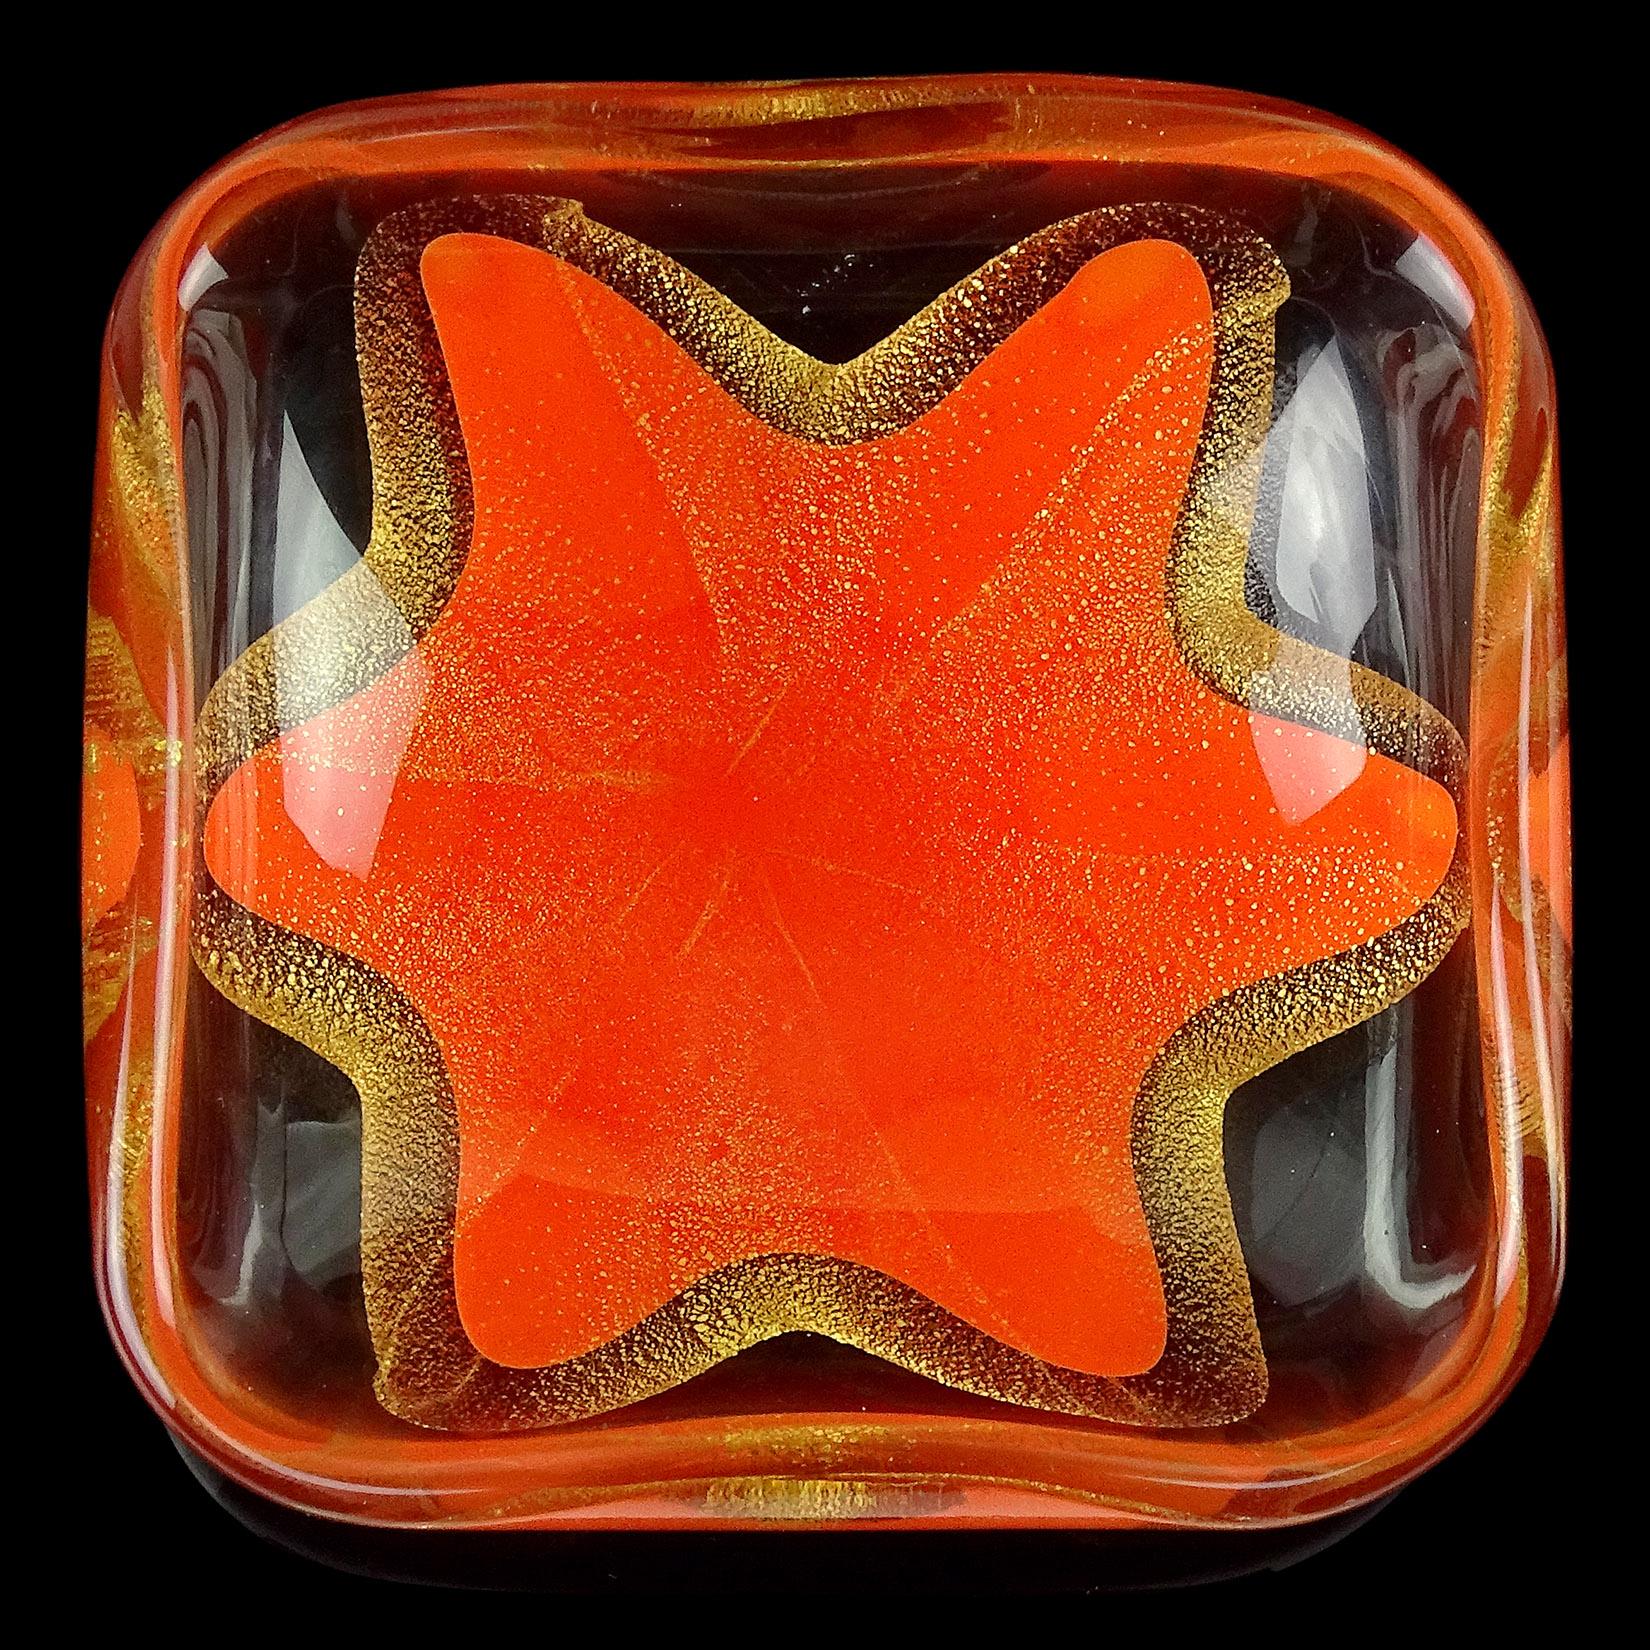 Schöner Satz von Vintage Murano mundgeblasenen Orange und Goldflecken italienische Kunst Glas Stern Design Ring oder Schmuck Schüssel gesetzt. Dokumentiert für die Firma Salviati, ca. 1950er Jahre. Obwohl sie klein sind, sind sie mit Blattgold